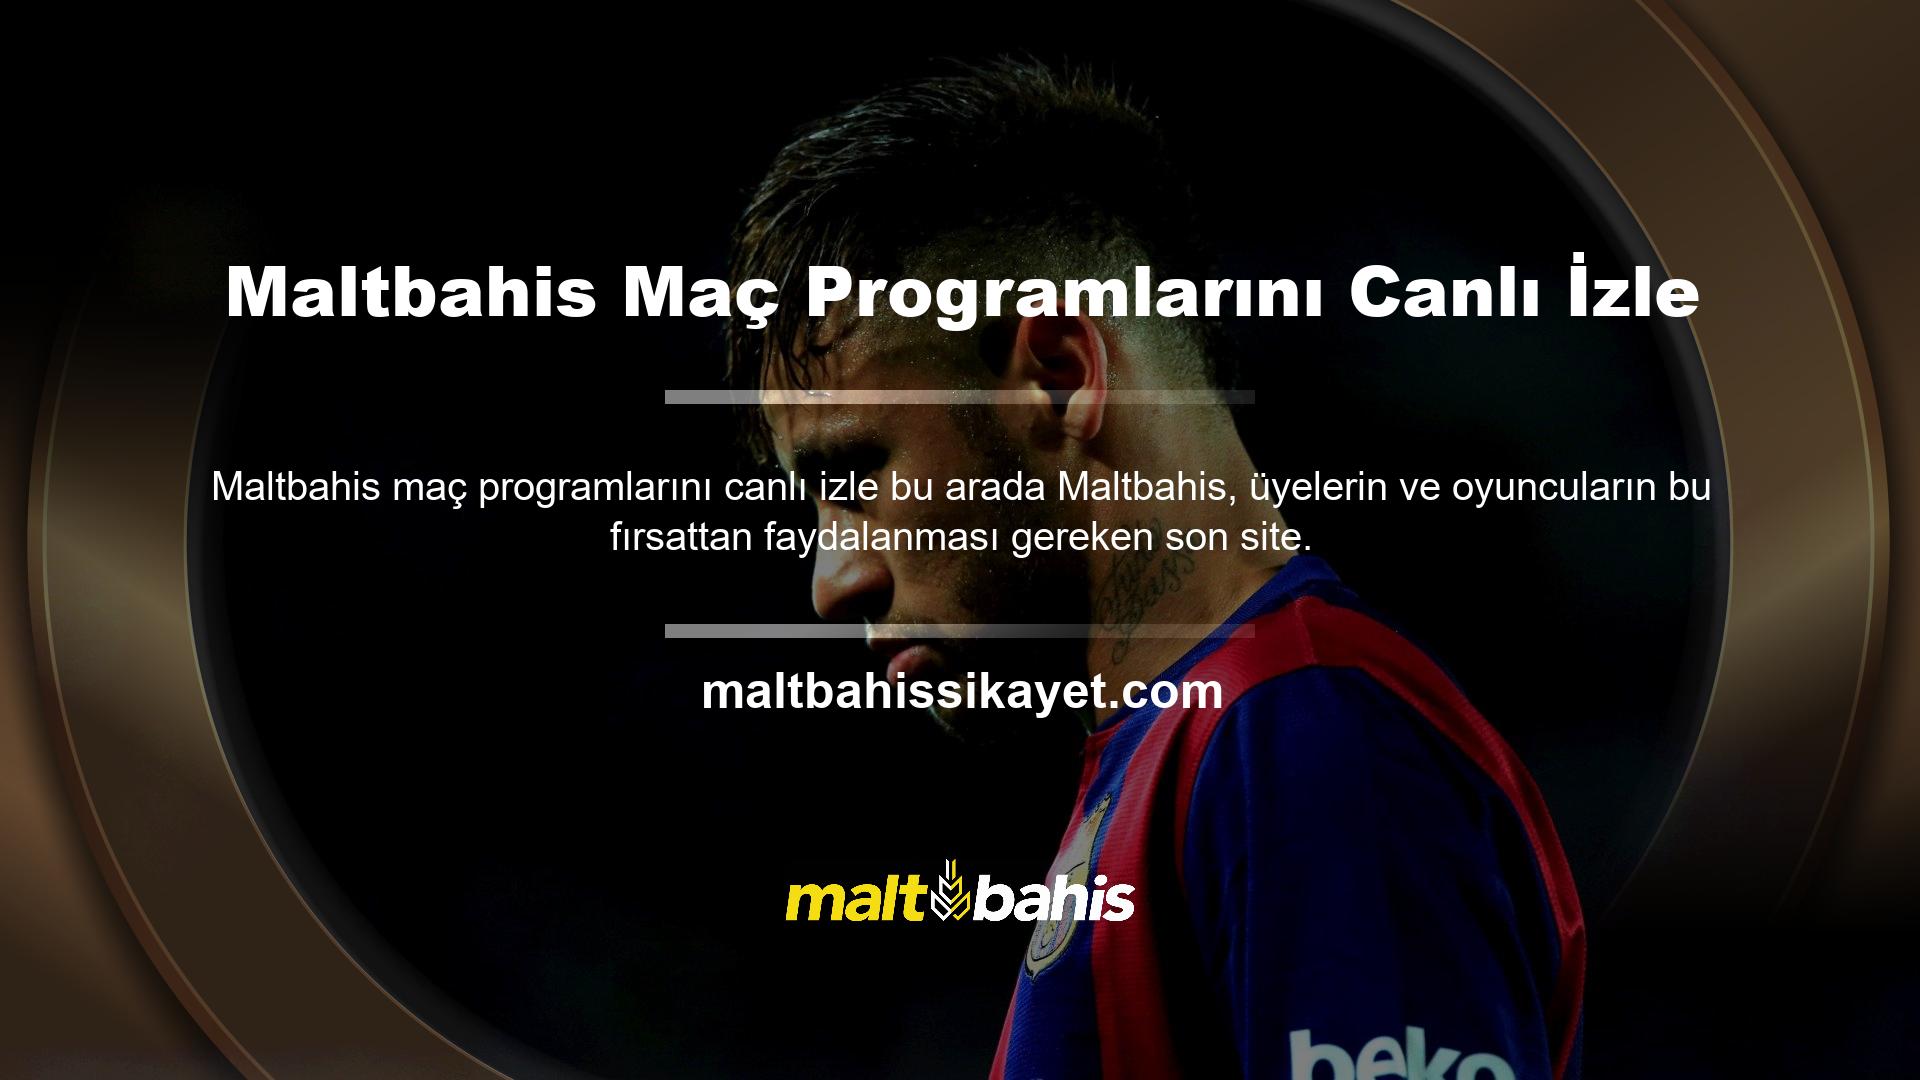 Önce "Maltbahis TV'de maçı canlı izleme" konusuna değinelim